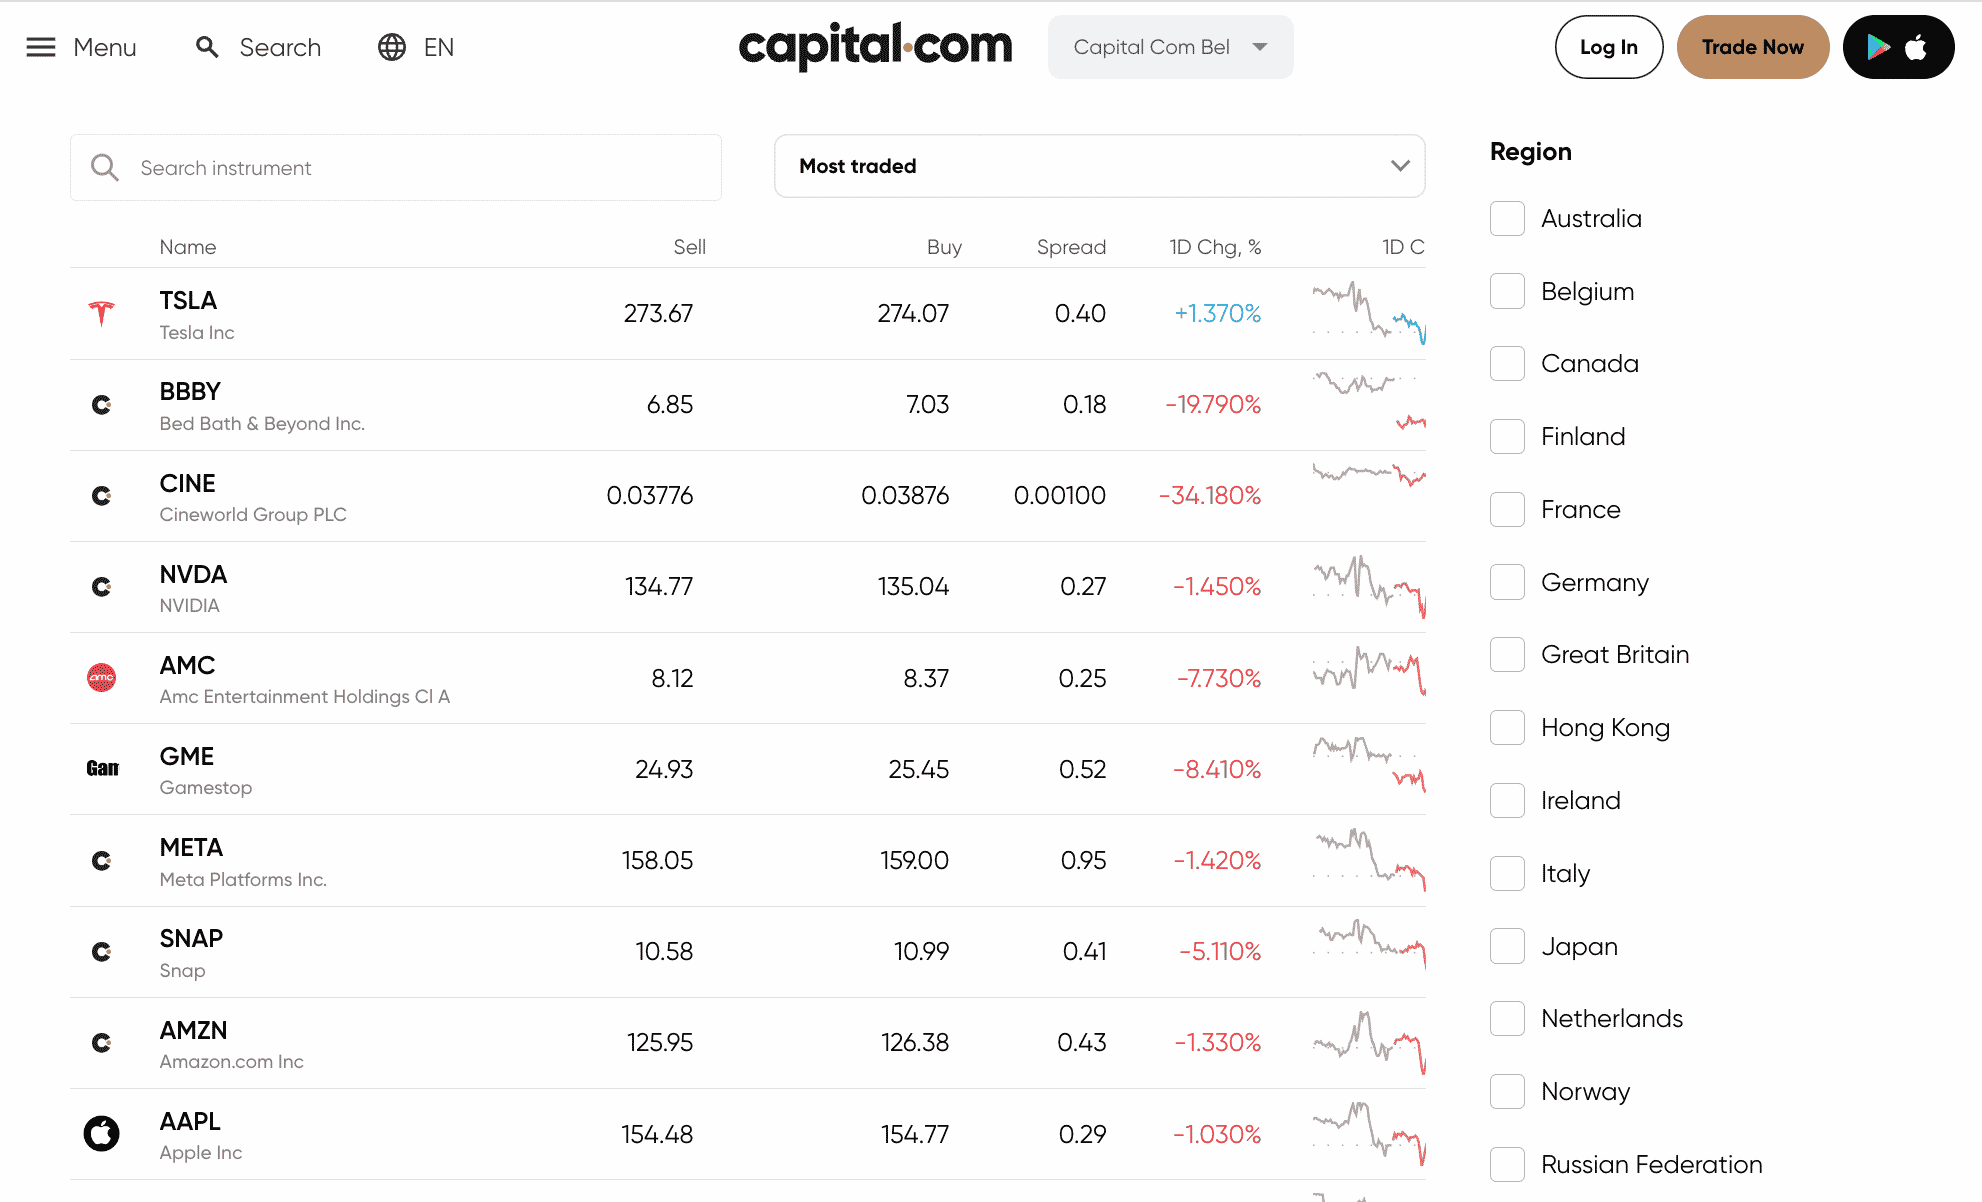 capital.com review